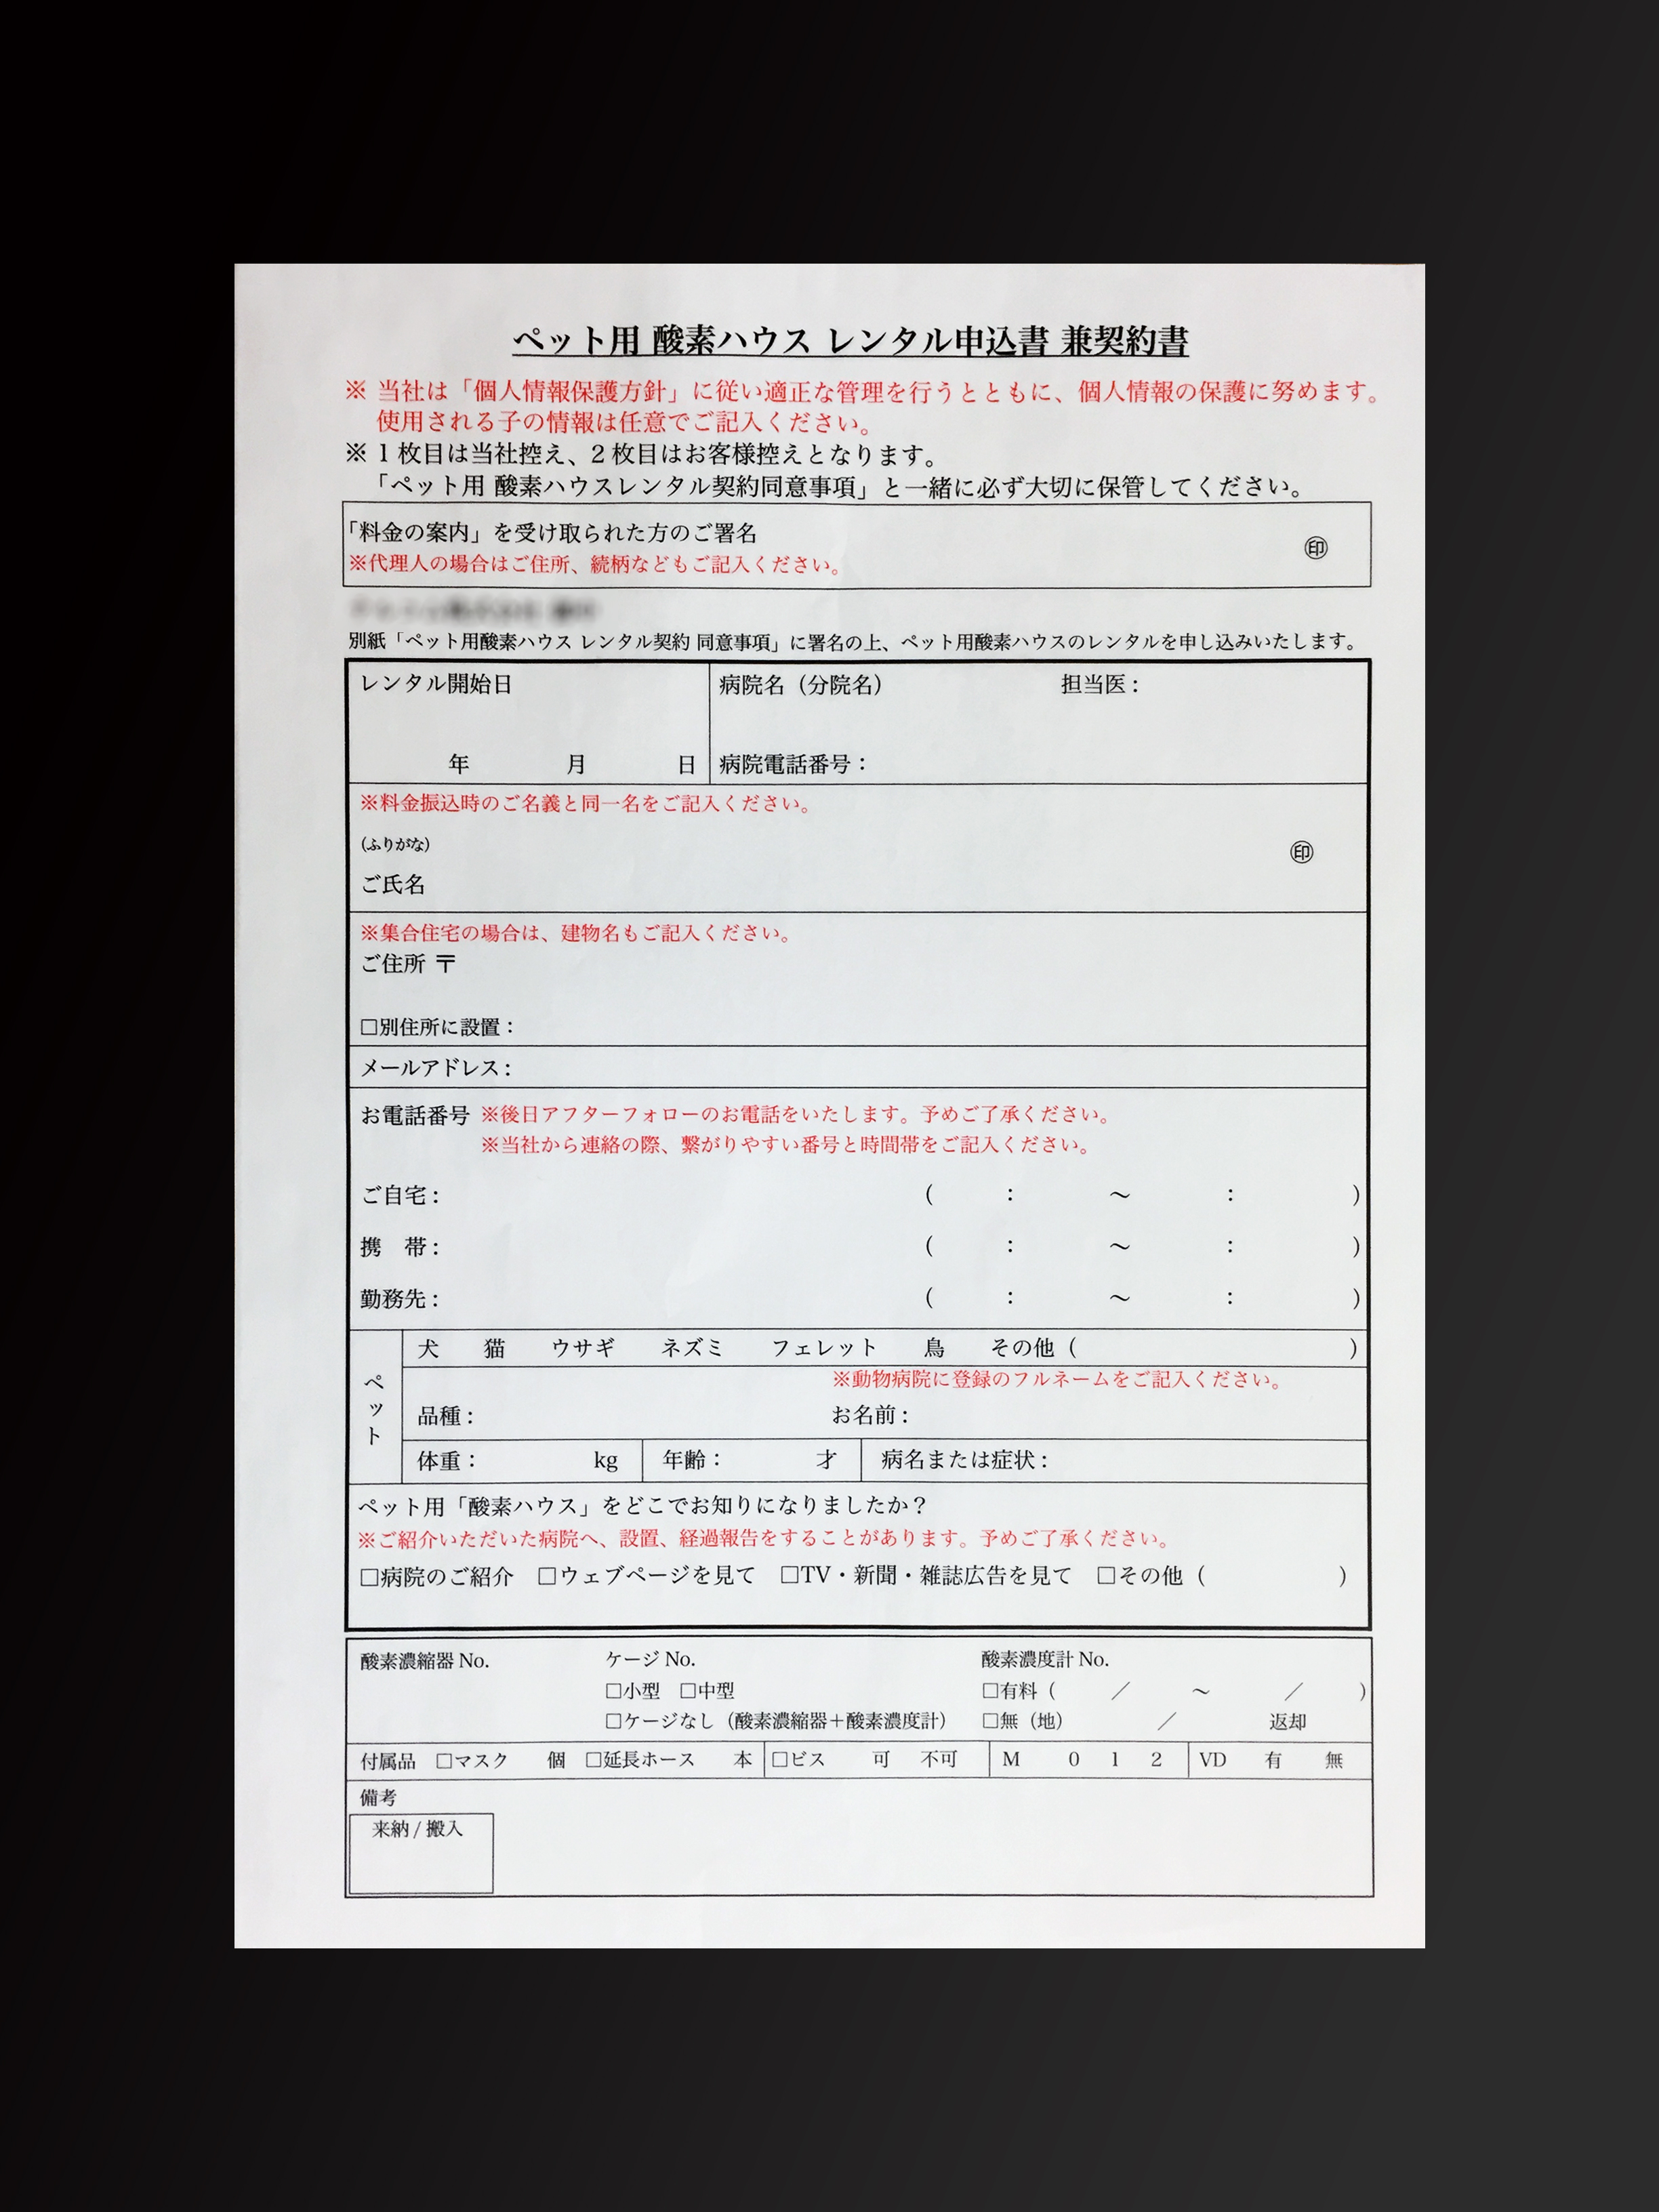 ペットショップ業で使用するレンタル申込書(2枚複写)の伝票作成実績